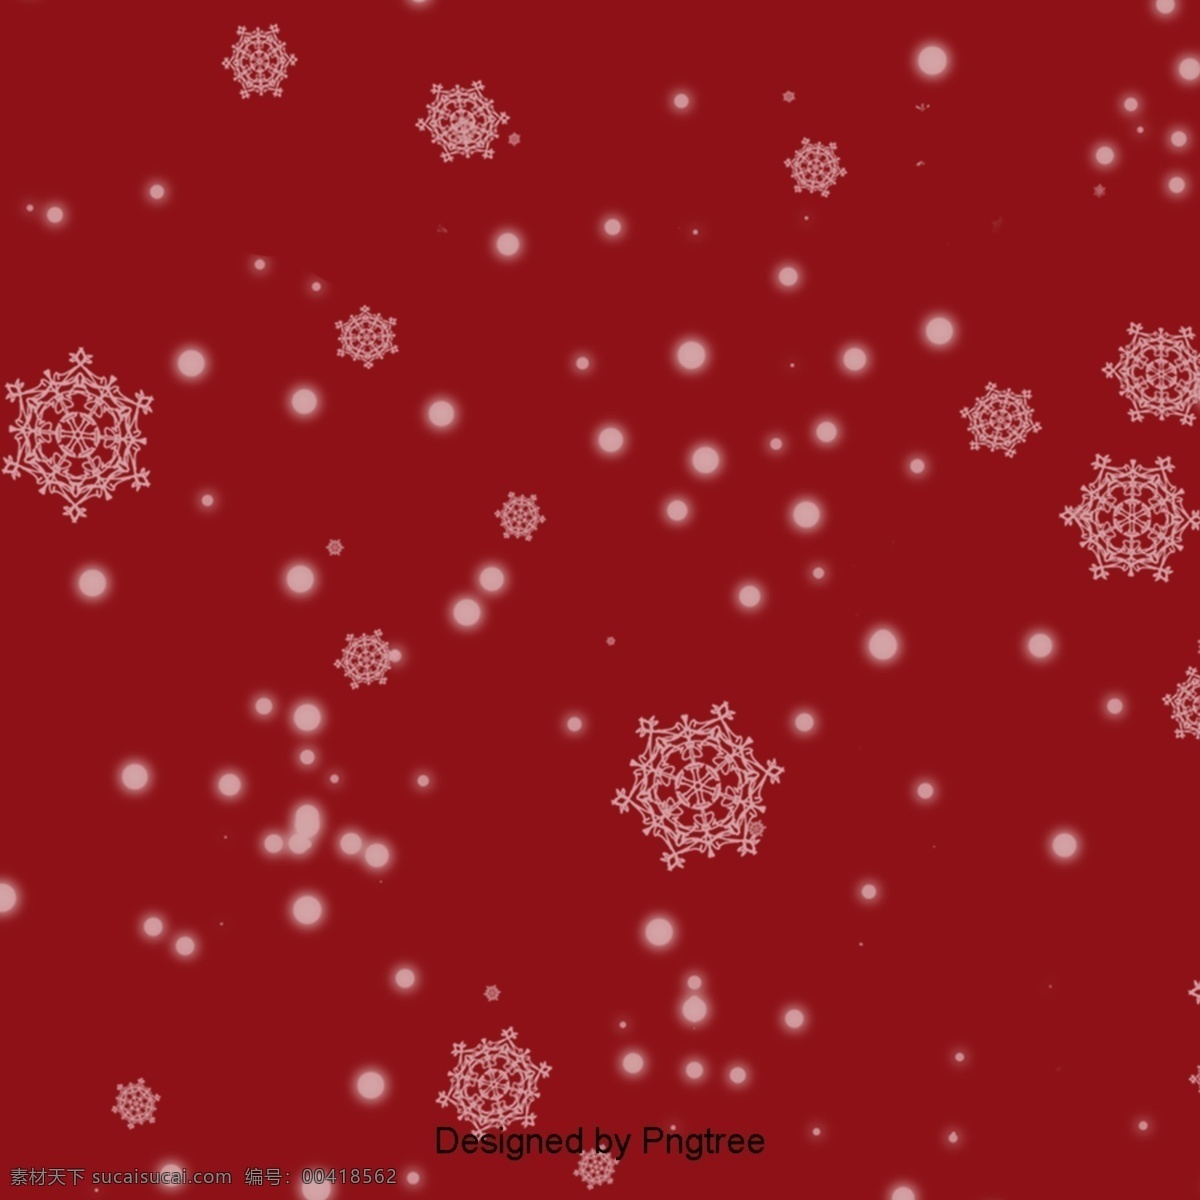 简单 复古 圣诞 雪花 背景 下 雪 红 深 红色 圣诞节 模式